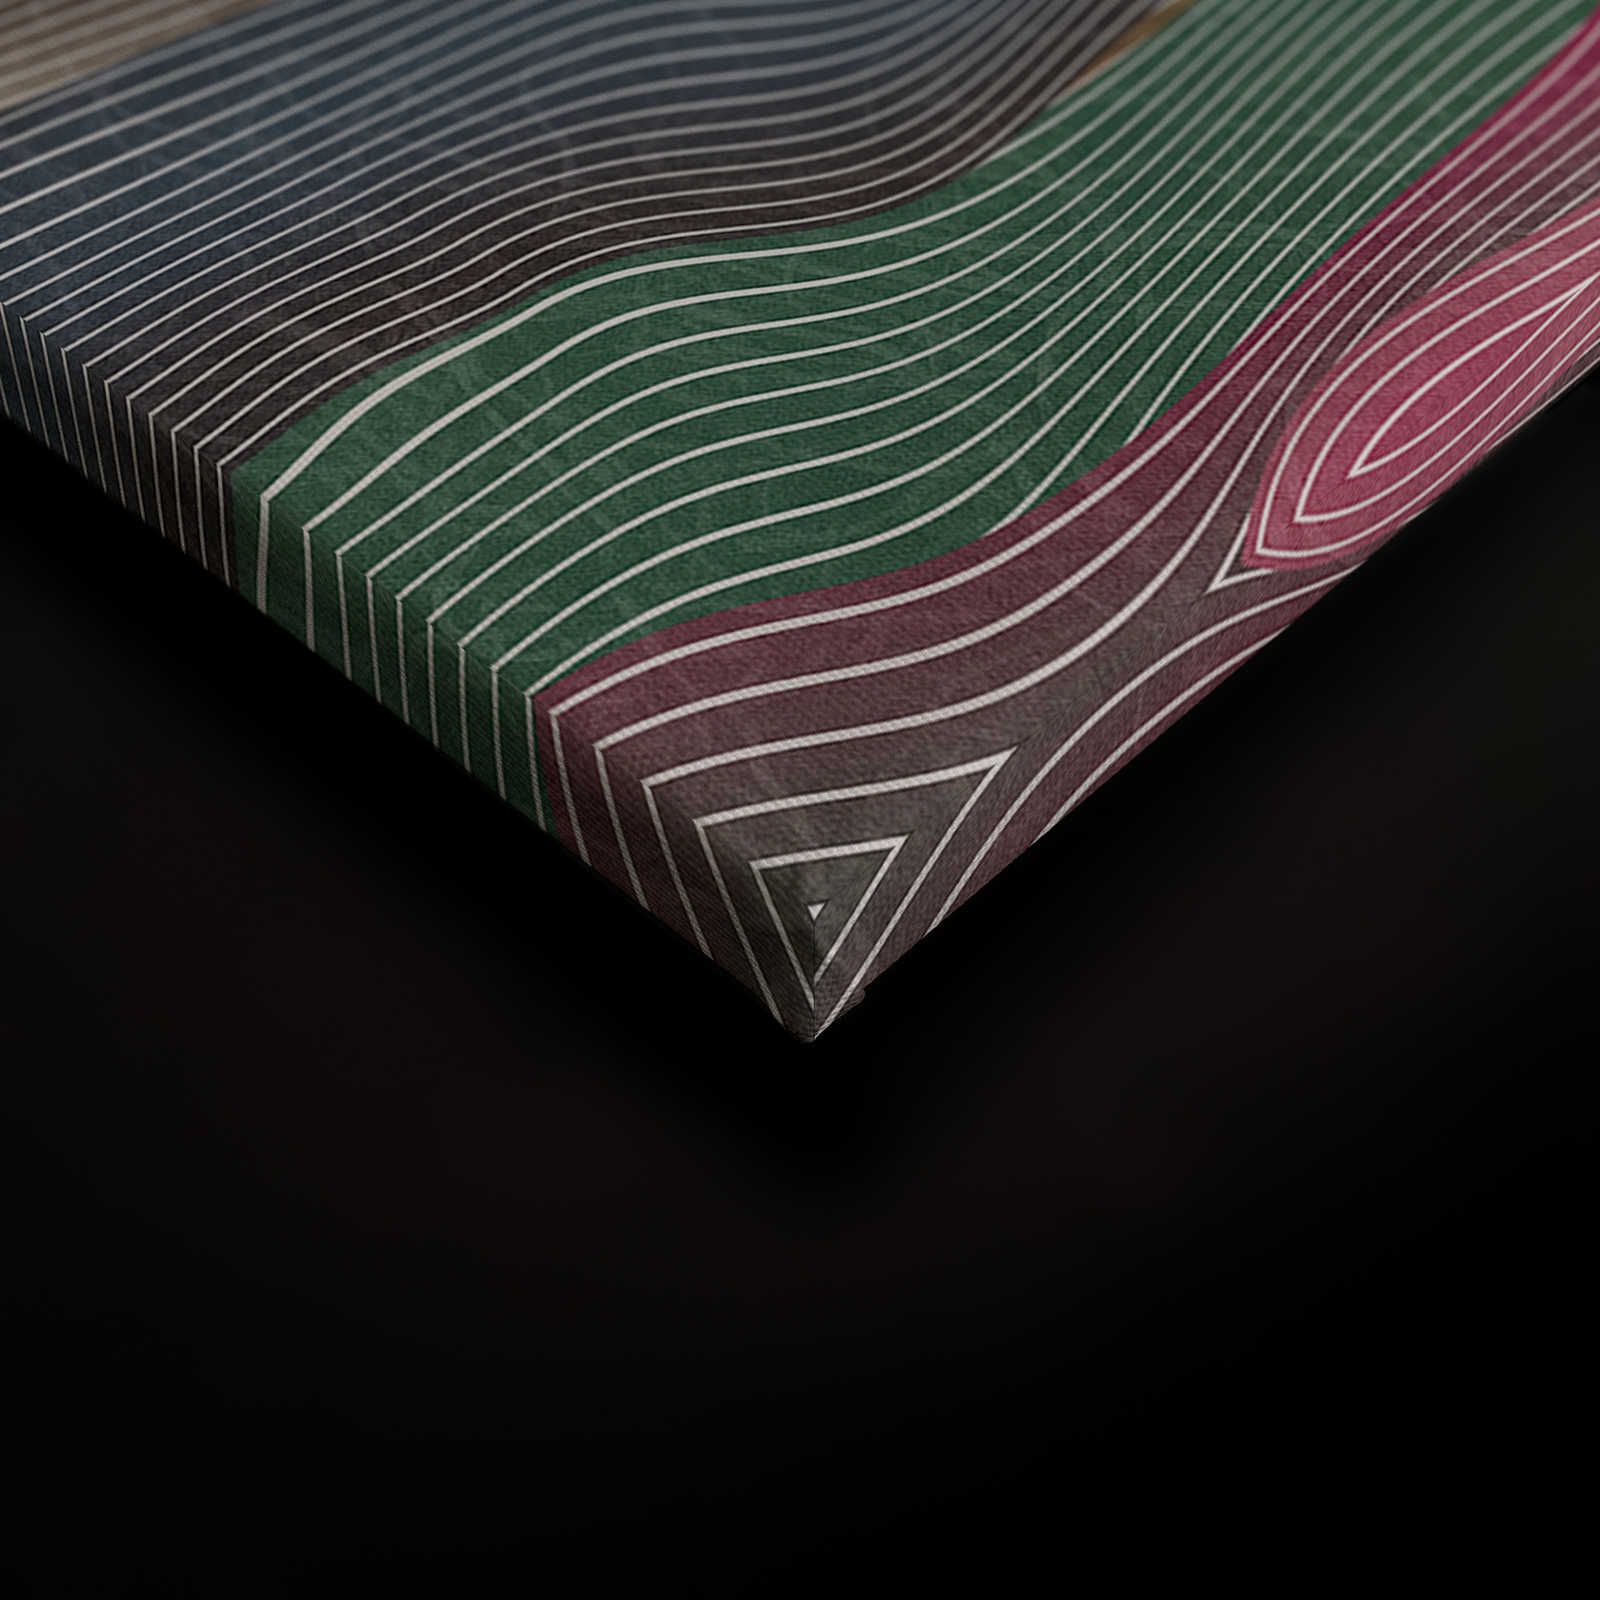             Space 1 - Leinwandbild Wellen Muster Pink & Grün im Retro Stil – 0,90 m x 0,60 m
        